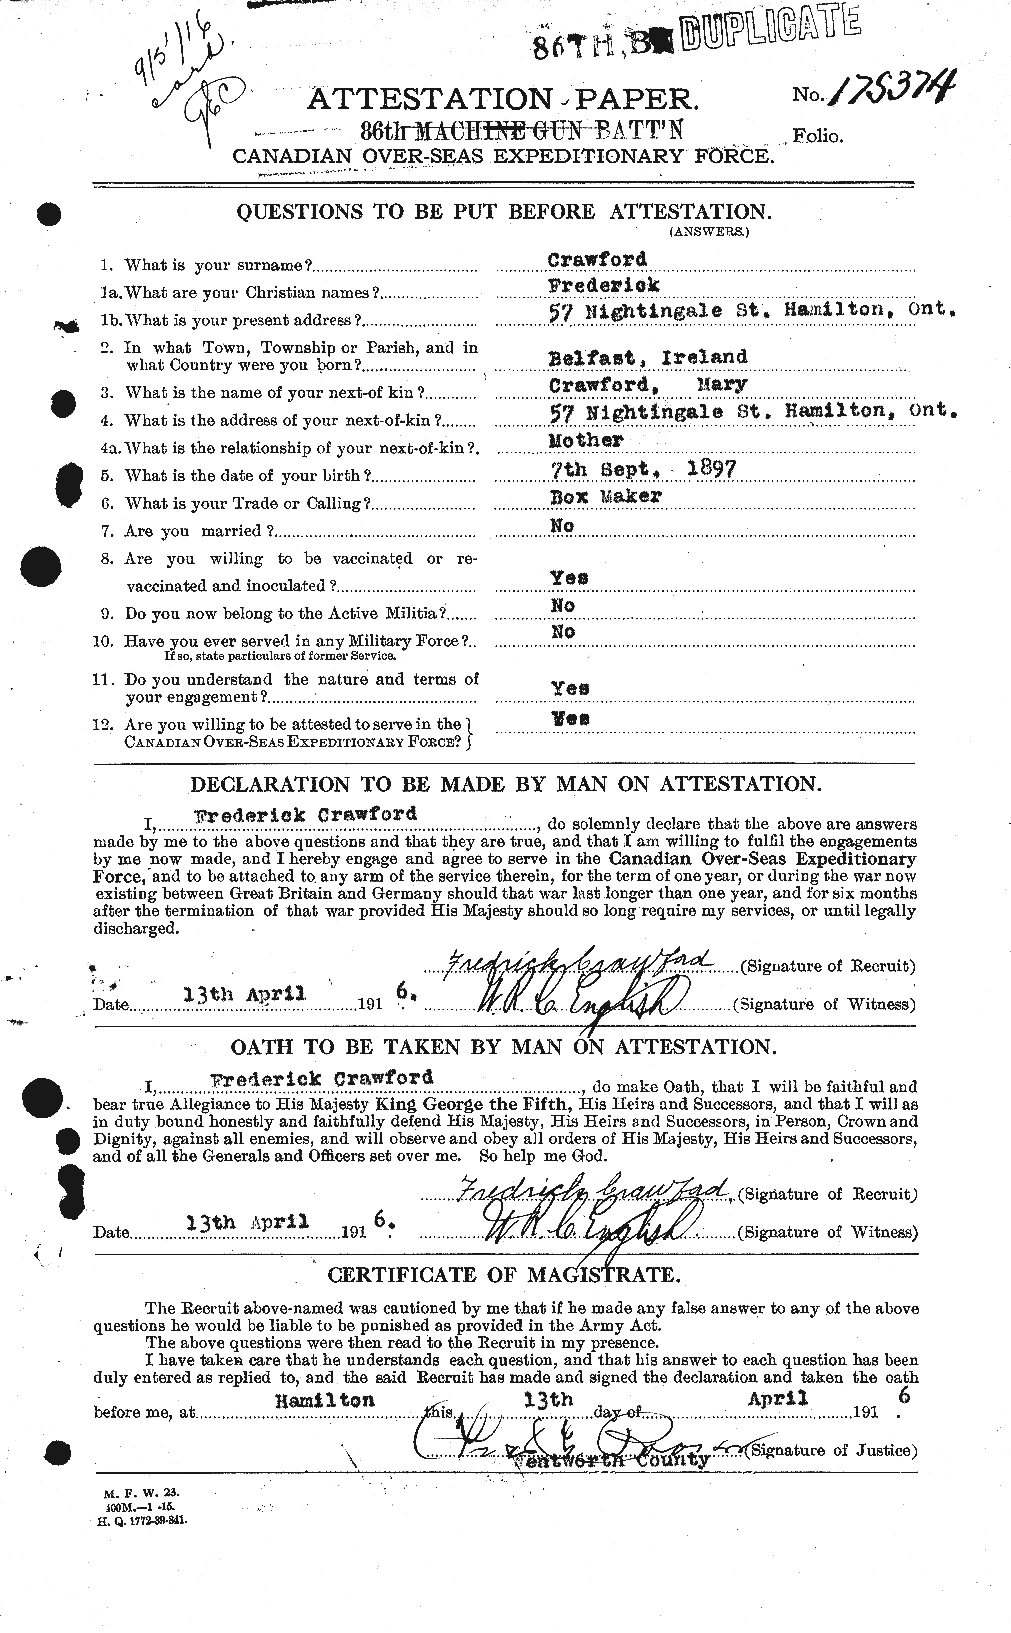 Dossiers du Personnel de la Première Guerre mondiale - CEC 060728a